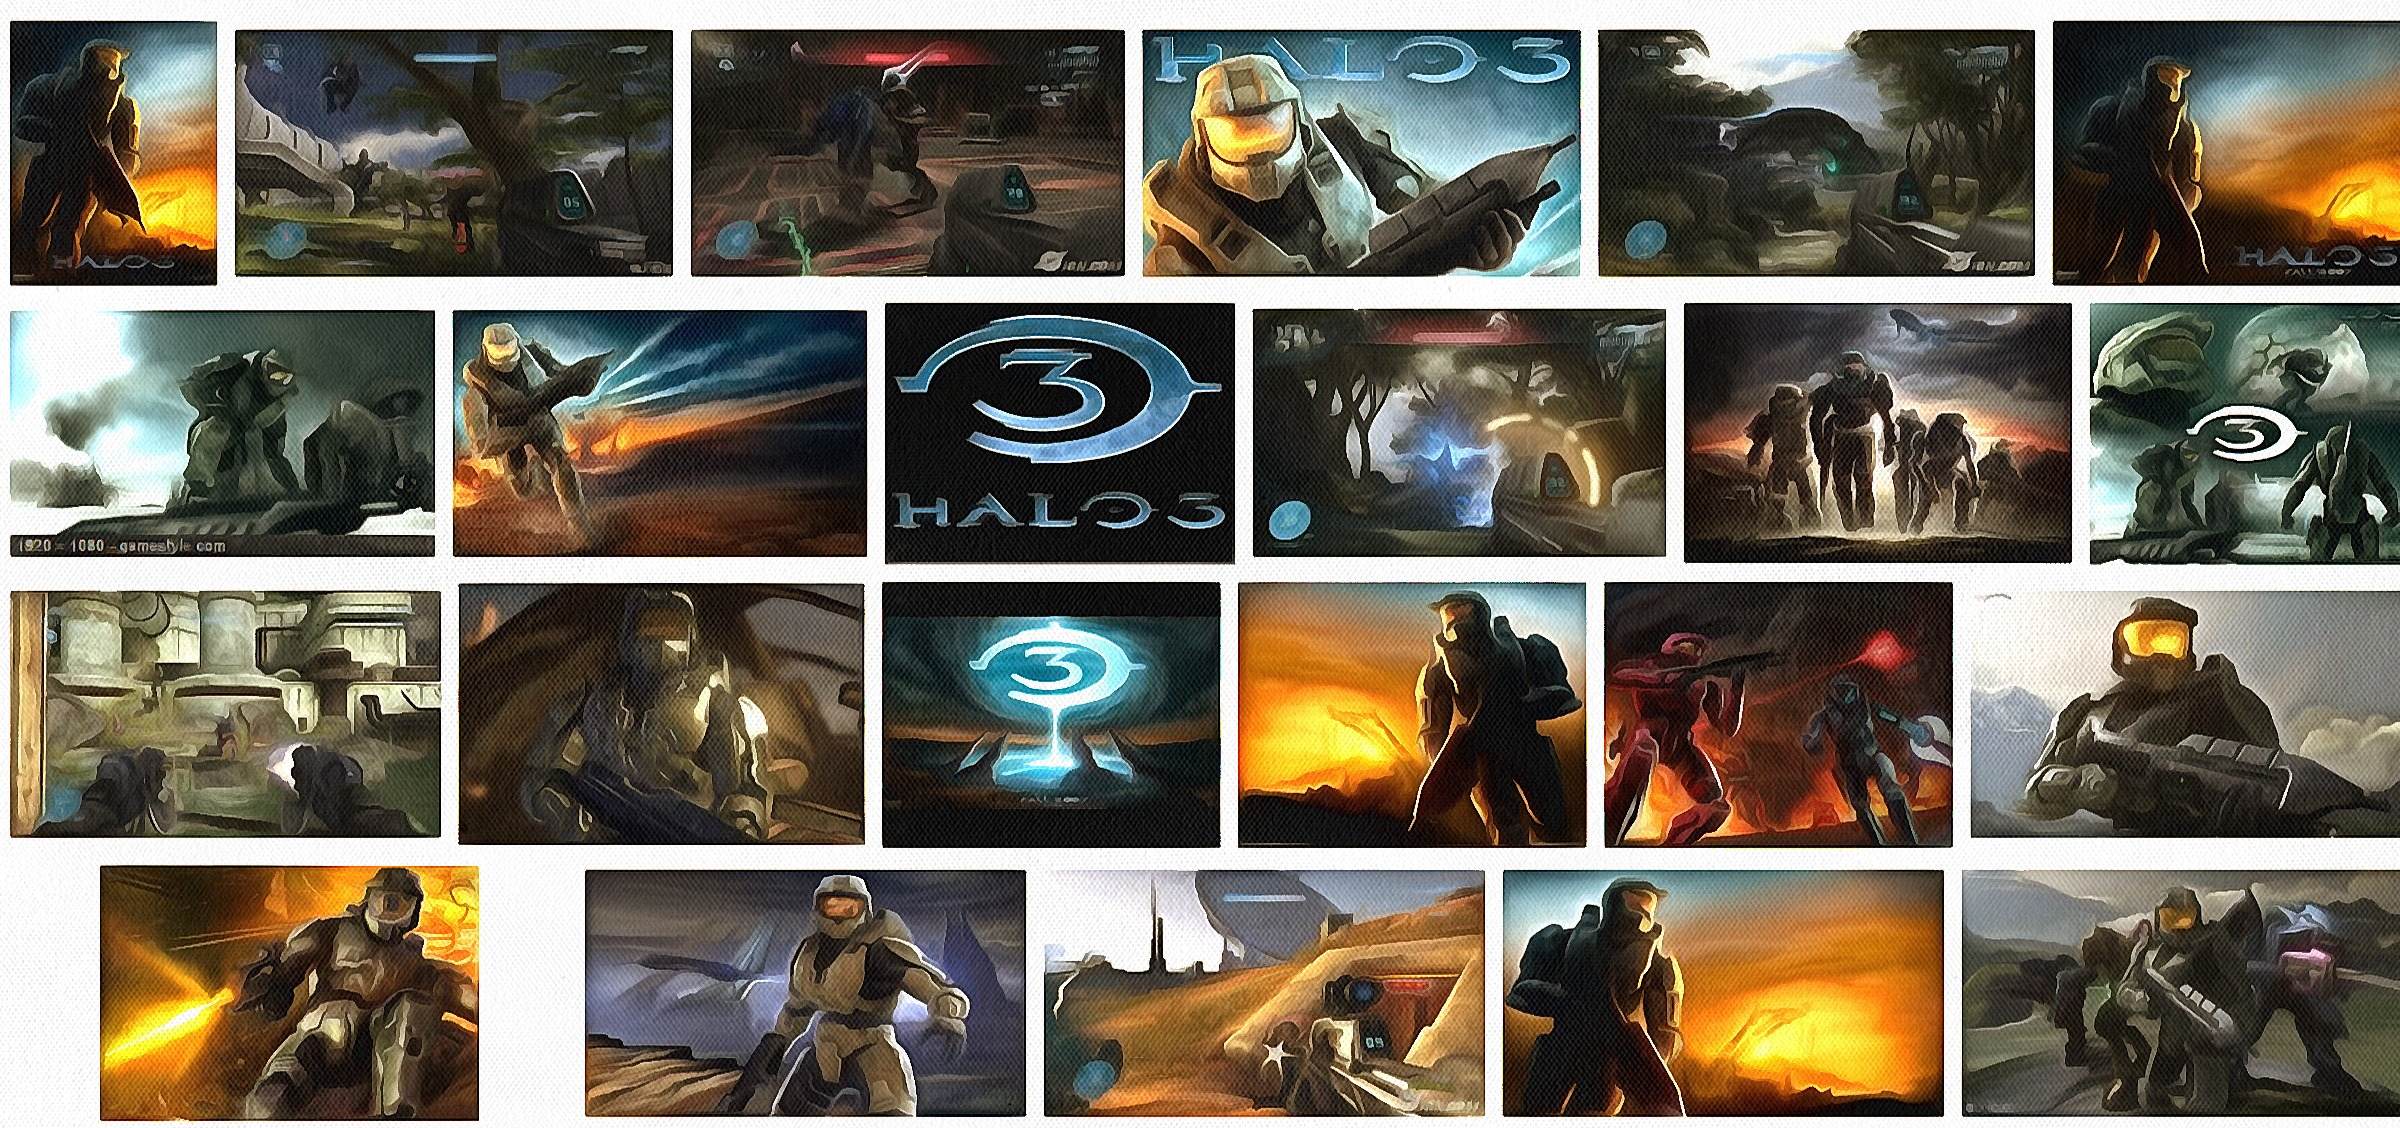 Halo 3 Funny Videos